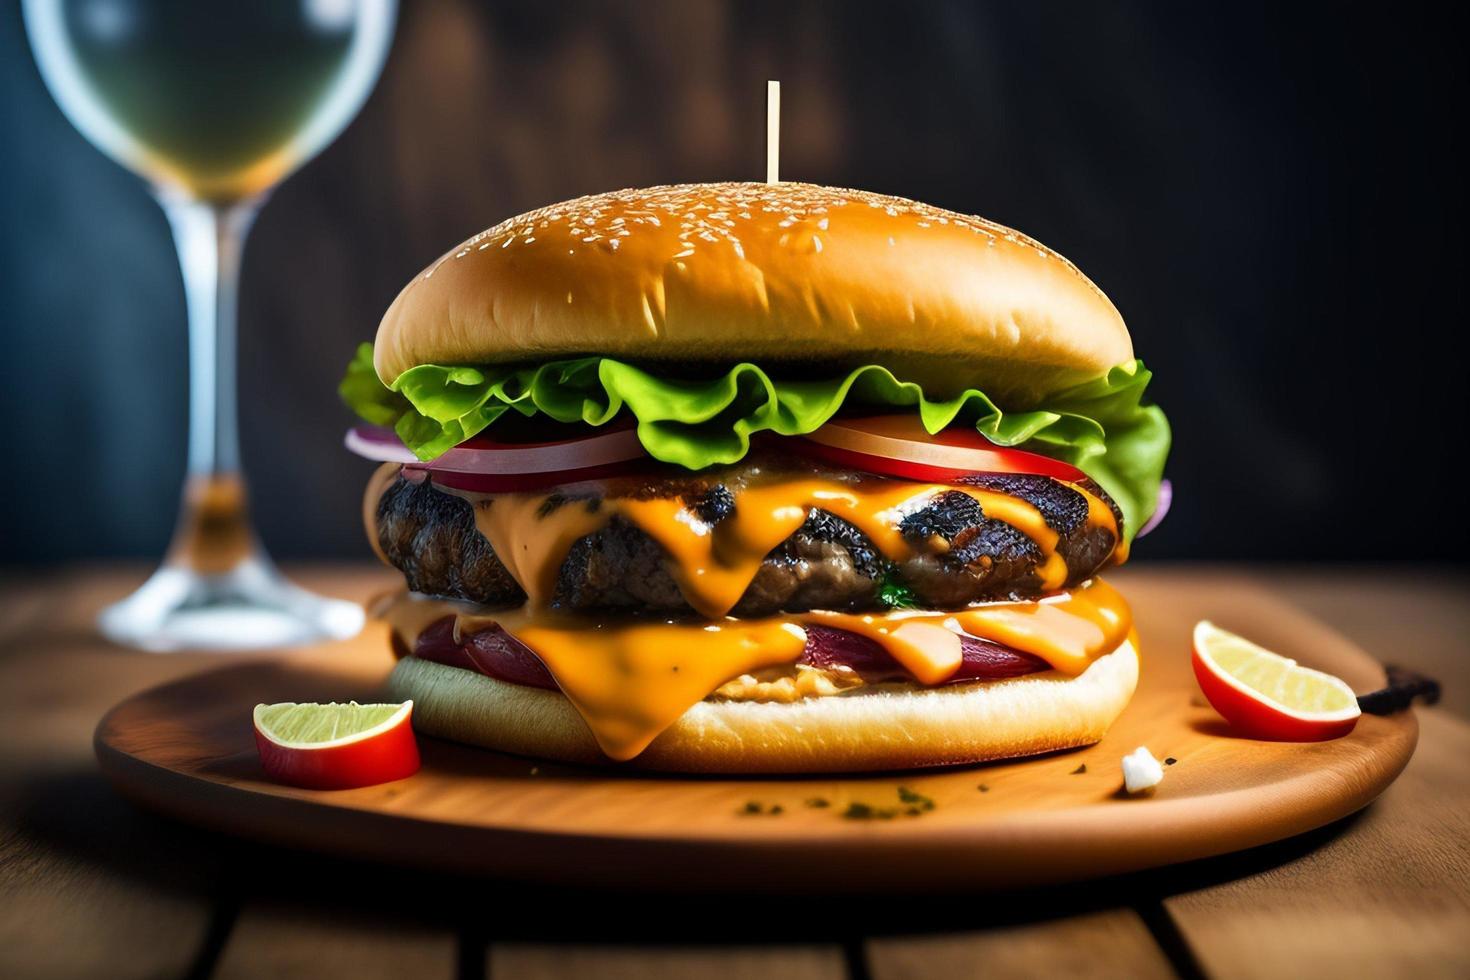 vista frontal sabrosa hamburguesa de carne con queso y ensalada foto